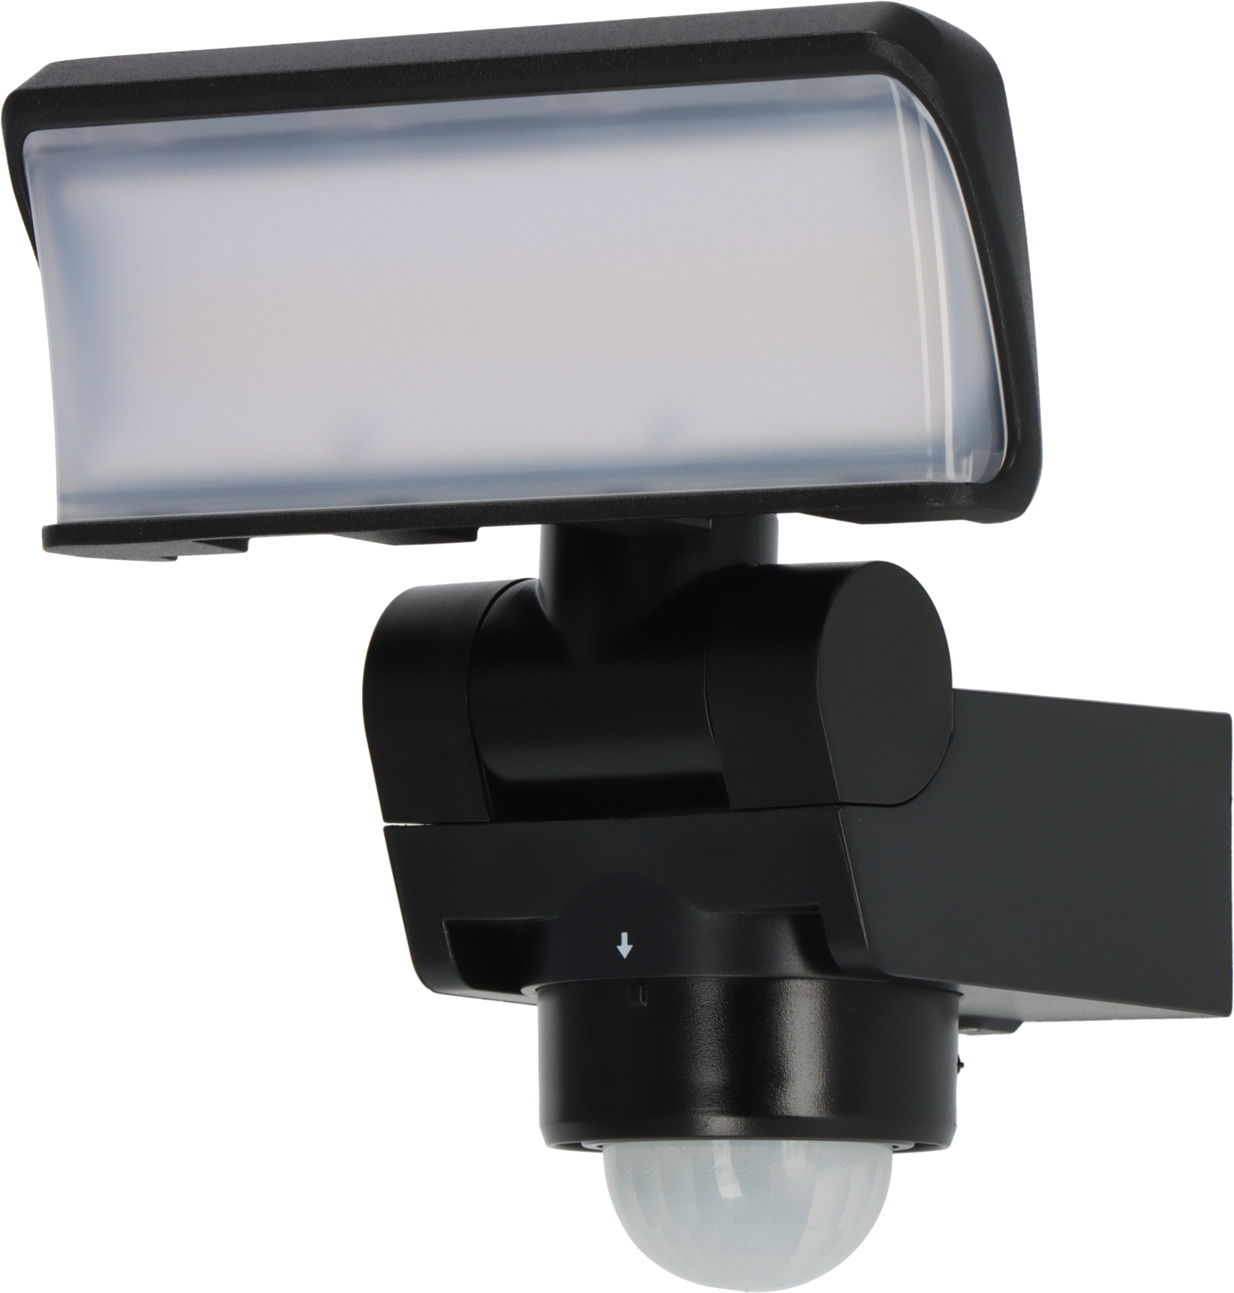 LED-spot WS SP met bewegingsmelder, 1680lm, zwart brennenstuhl®